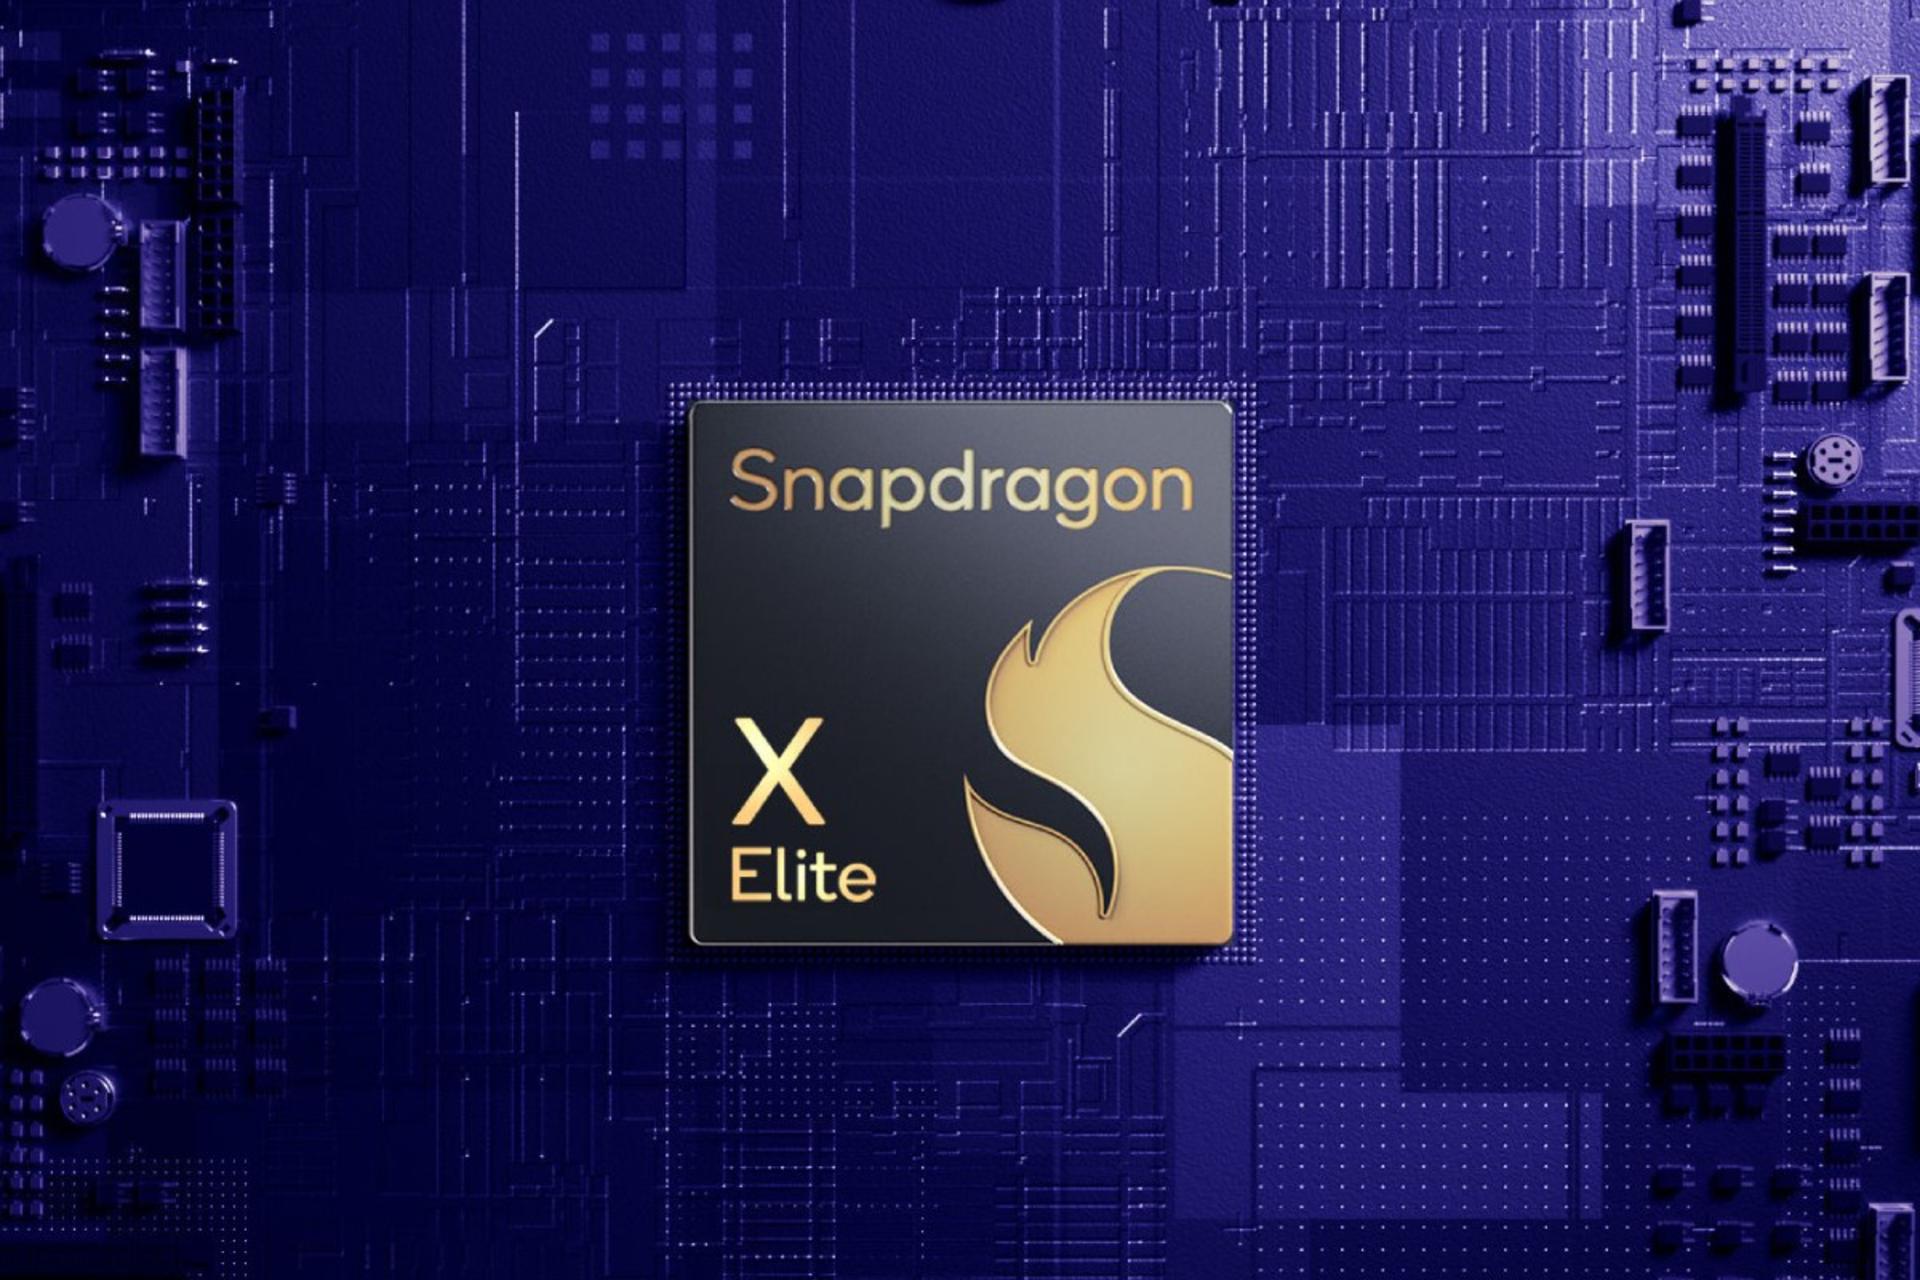 اسنپدراگون ایکس الیت | Snapdragon X Elite